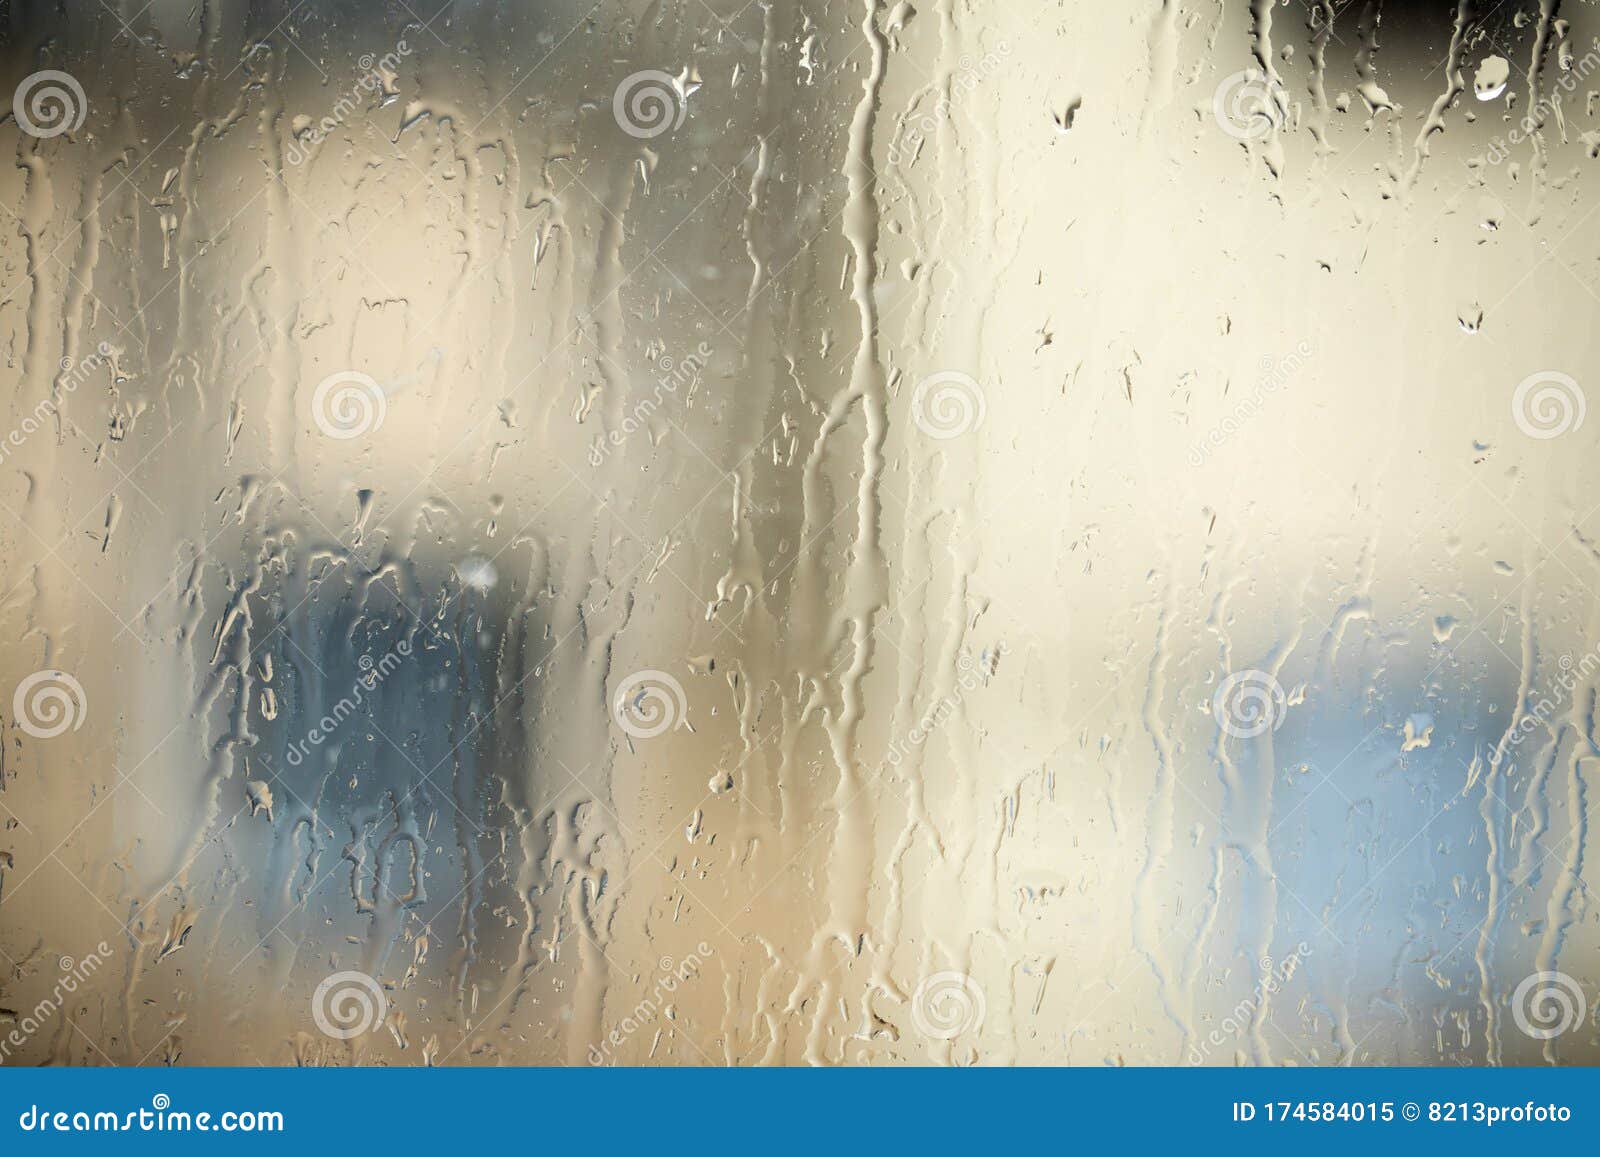 雨背景 窗上雨滴 秋季背景 抽象质感的壁纸库存图片 图片包括有雨背景 窗上雨滴 秋季背景 抽象质感的壁纸